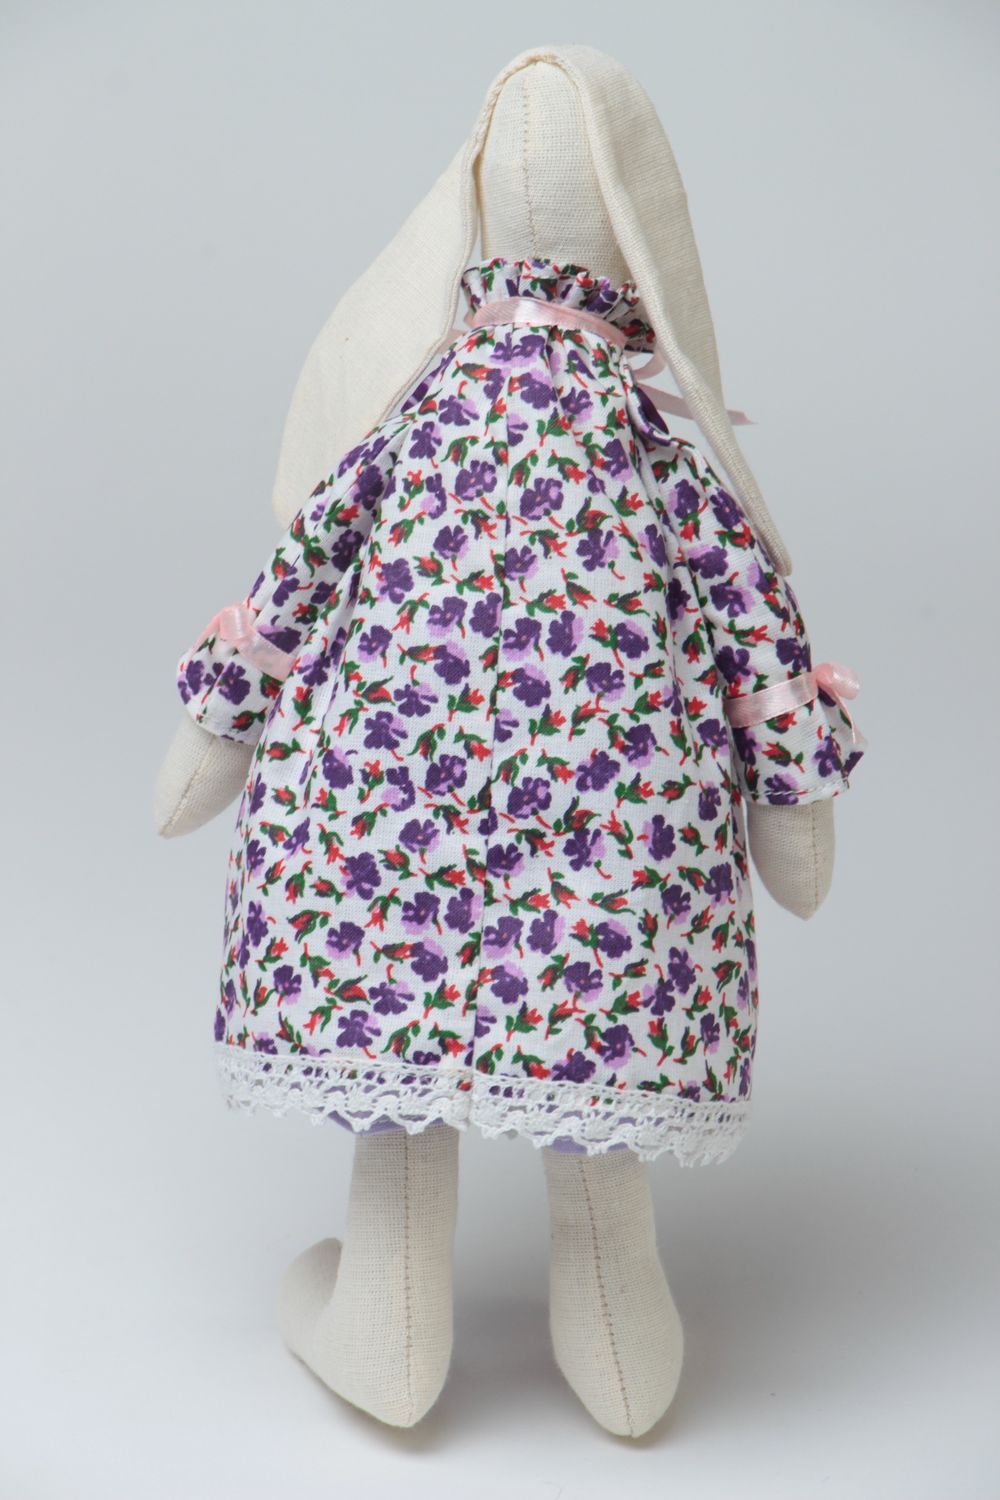 Muñeco de peluche original con forma de conejo de vestido estiloso hecho a mano foto 4